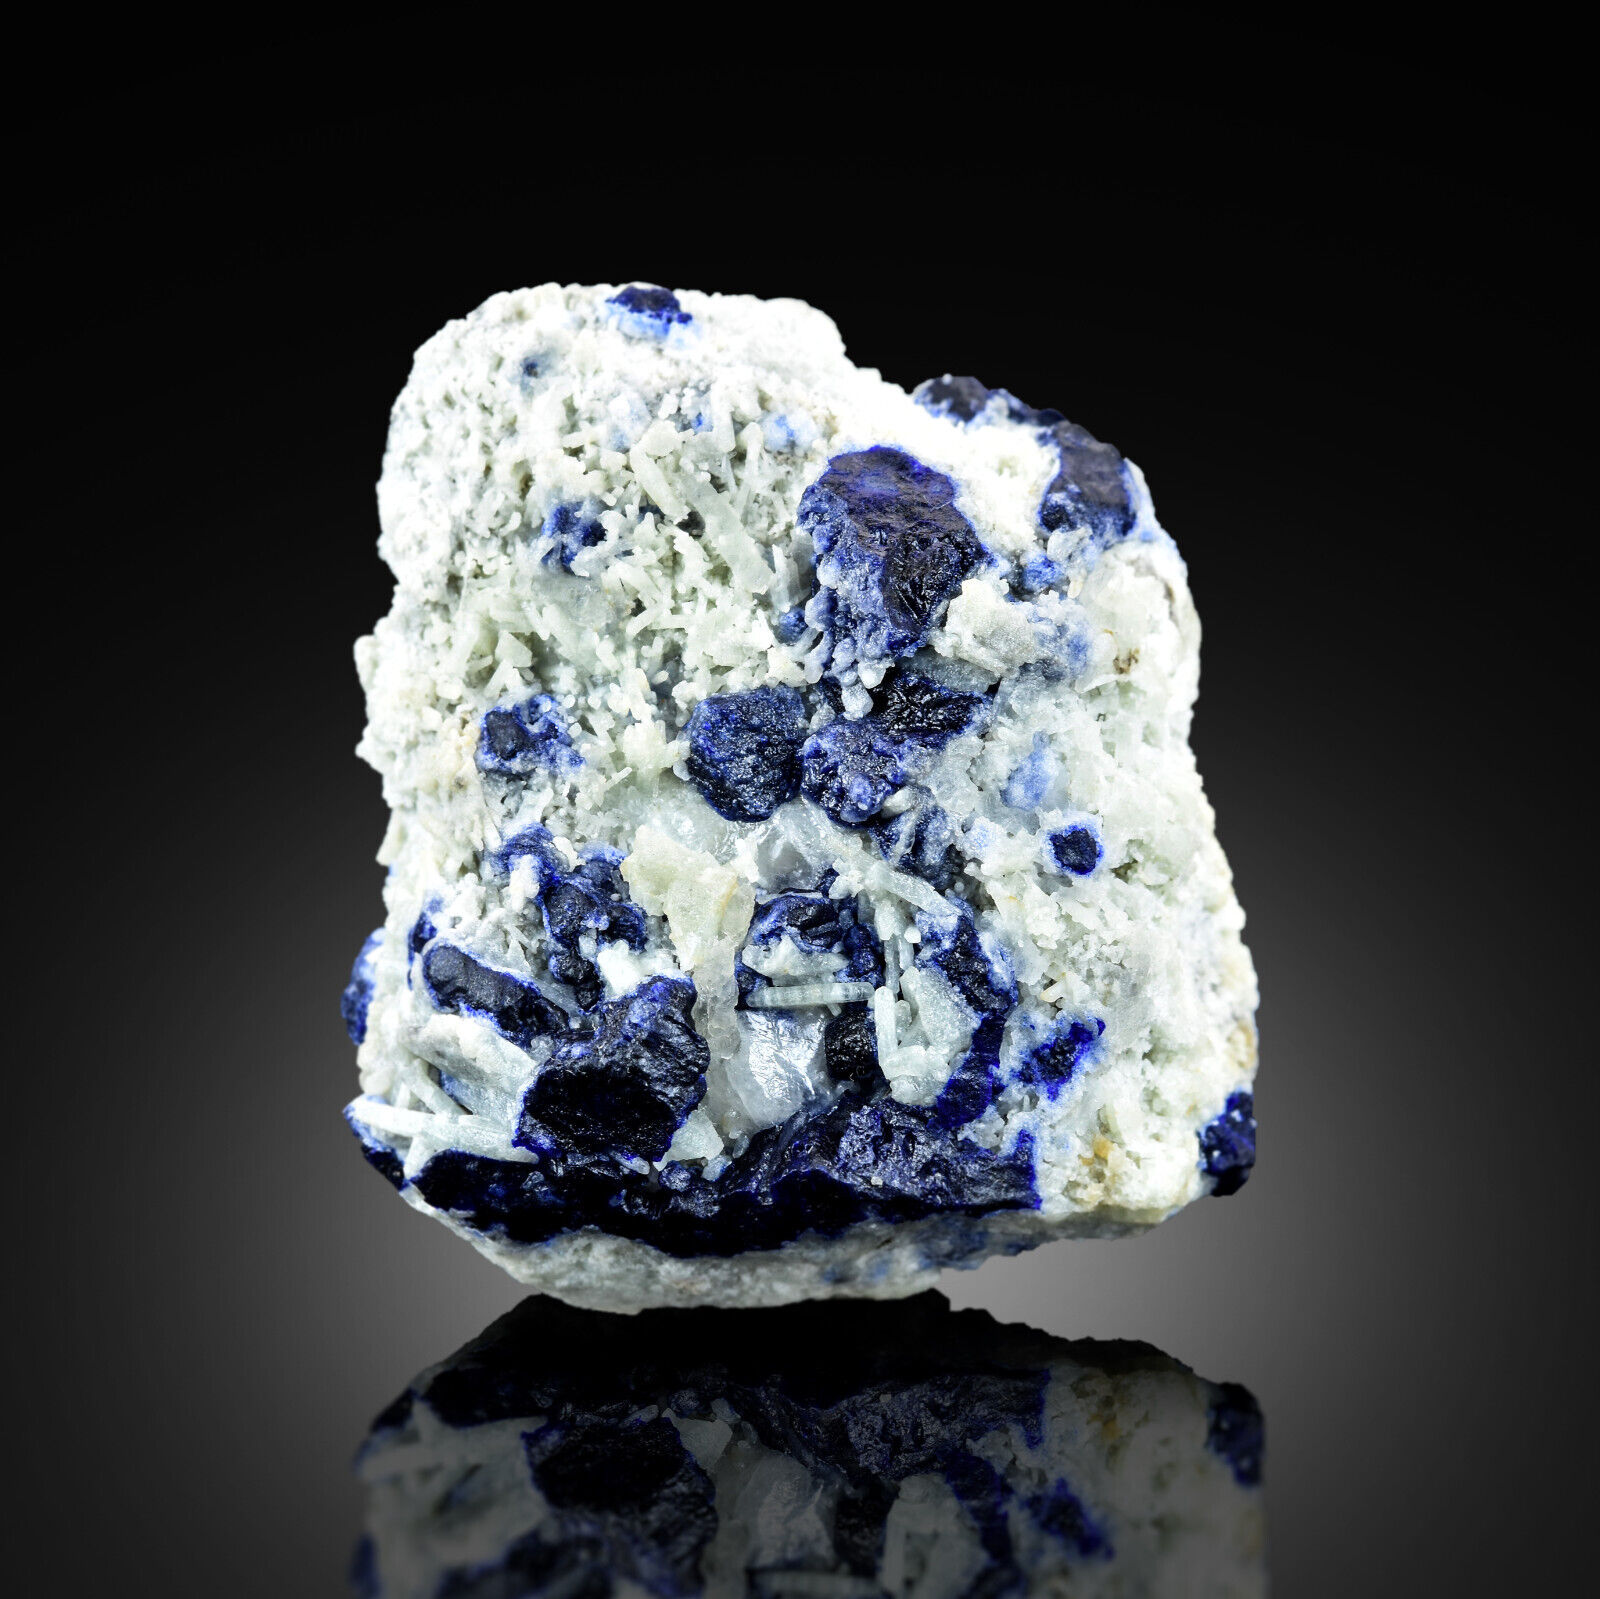 84 Gram Natural Lazurite Crystal Specimen Royal Blue Lazurite Crystal